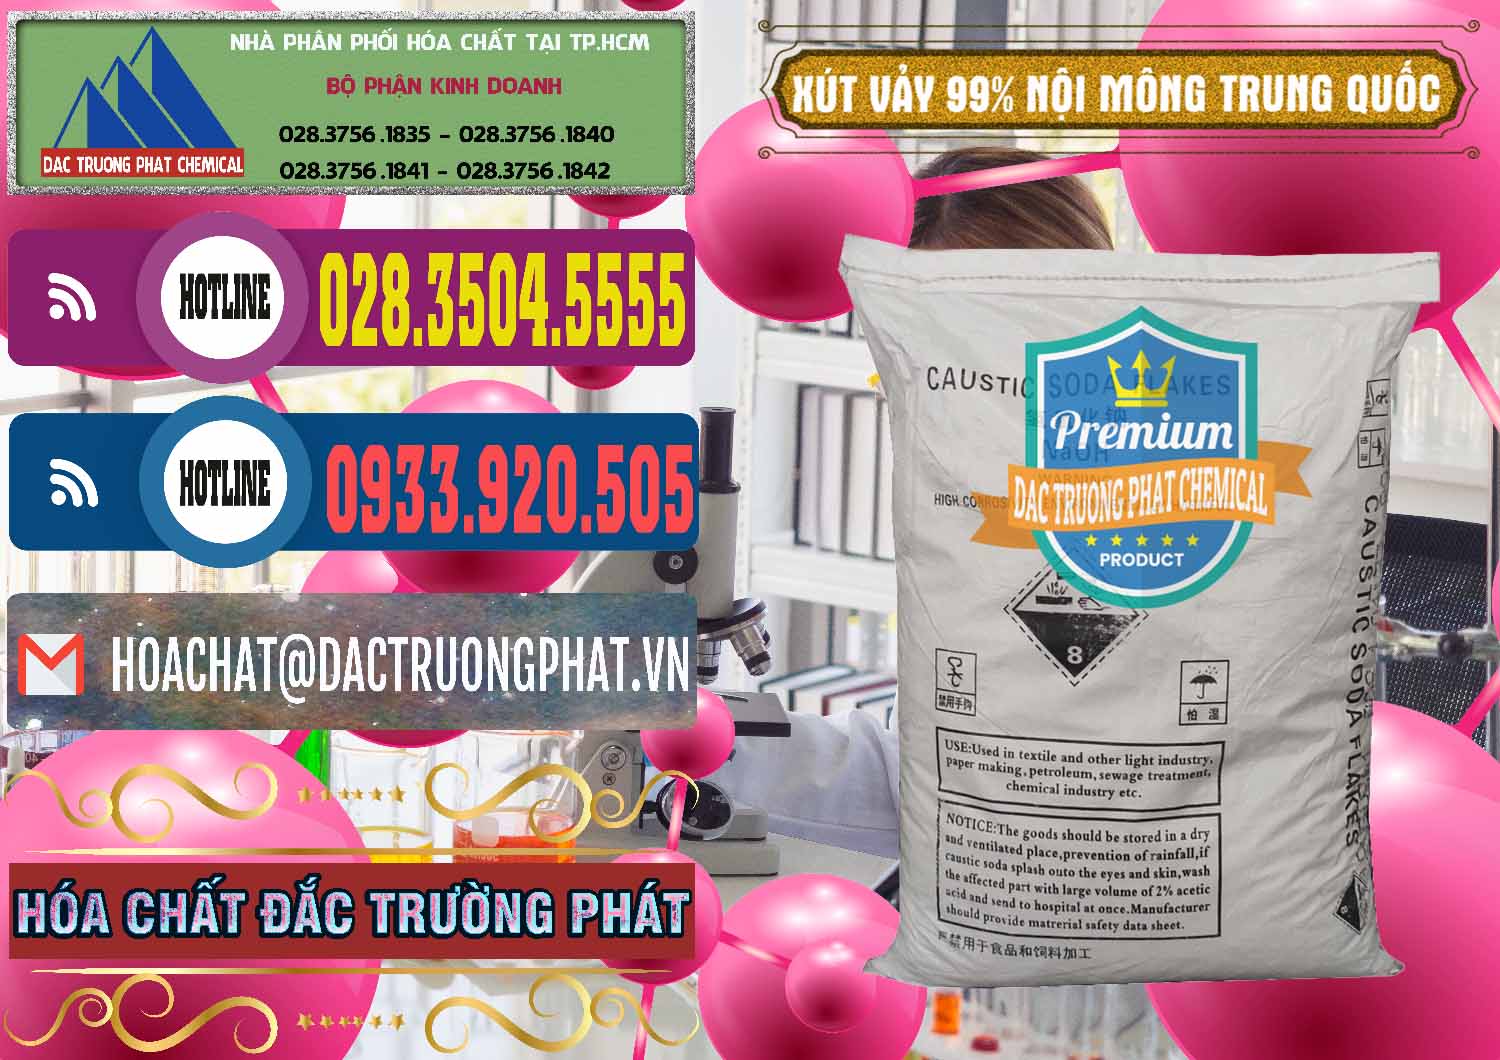 Cty chuyên bán và cung ứng Xút Vảy - NaOH Vảy 99% Nội Mông Trung Quốc China - 0228 - Cty phân phối - cung cấp hóa chất tại TP.HCM - muabanhoachat.com.vn